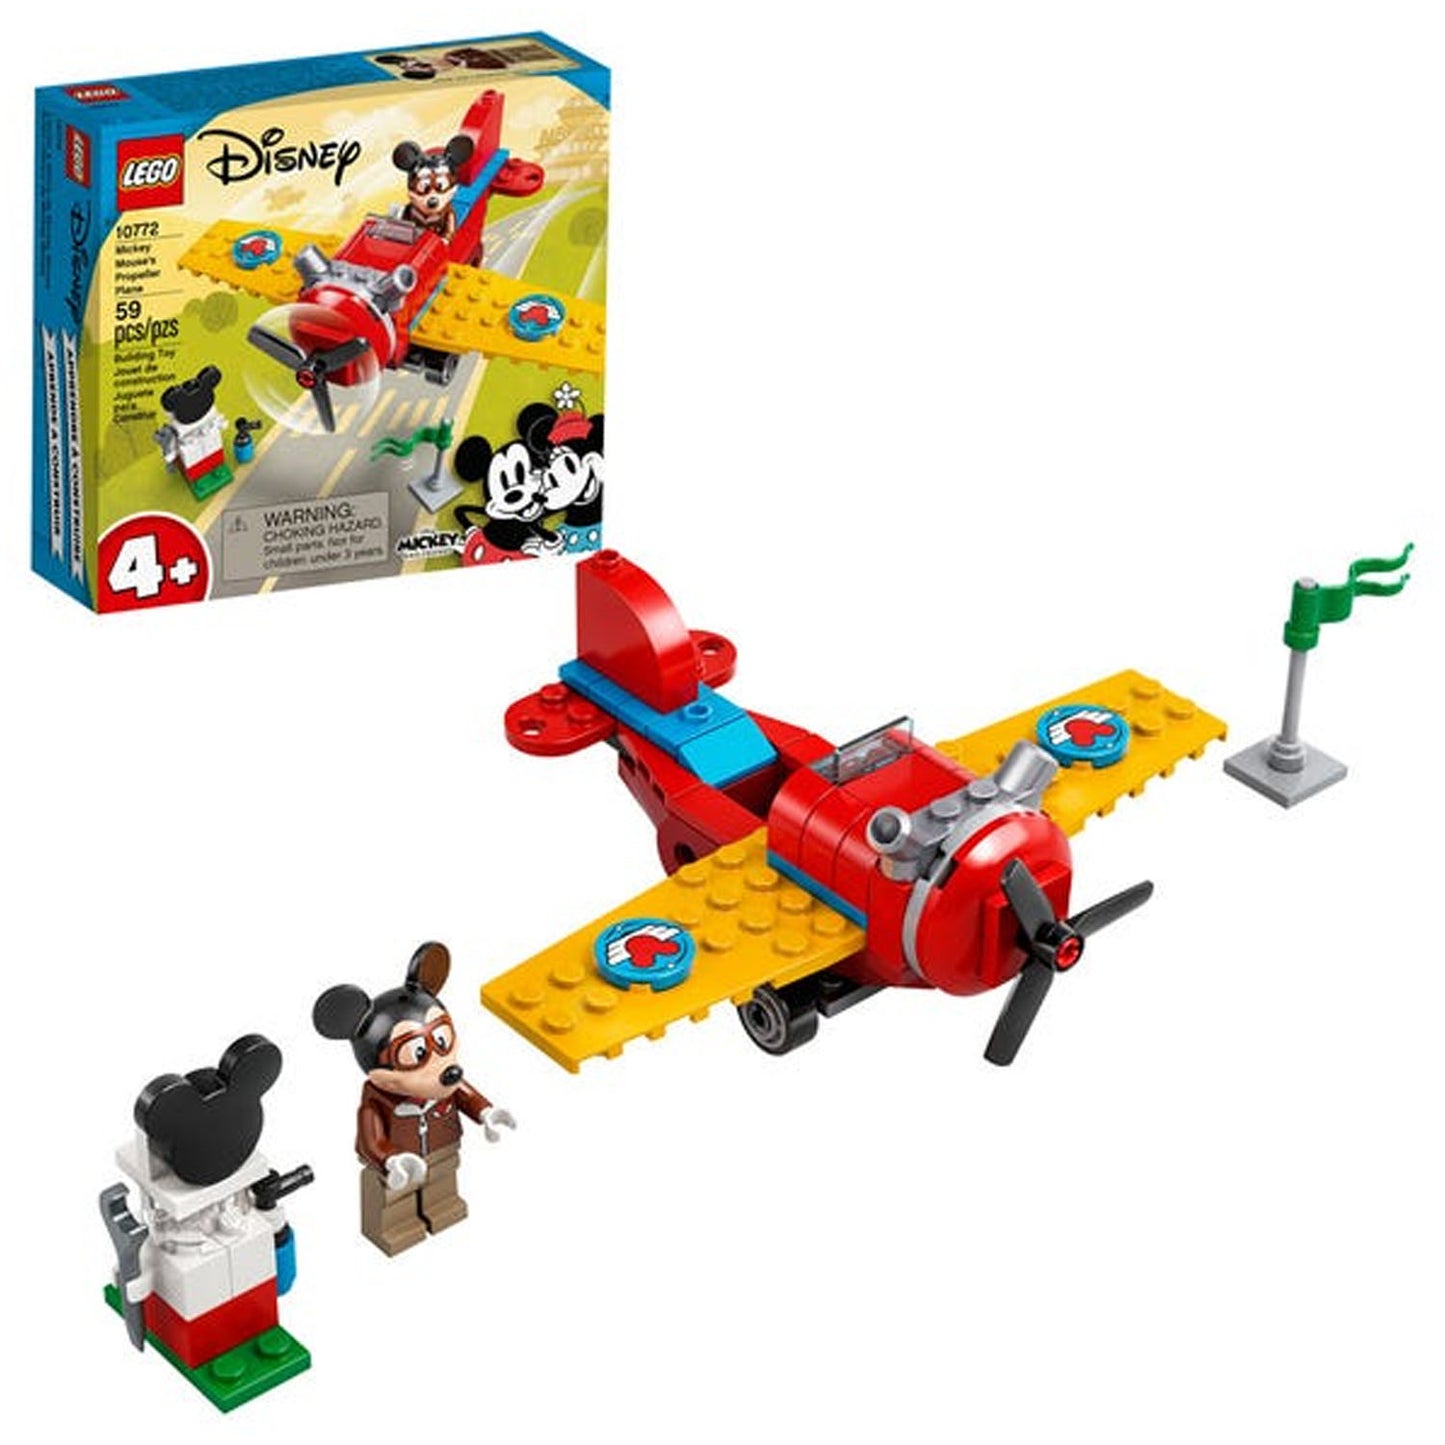 Lego Disney Avion Clasico De Mickey Mouse - Crazygames